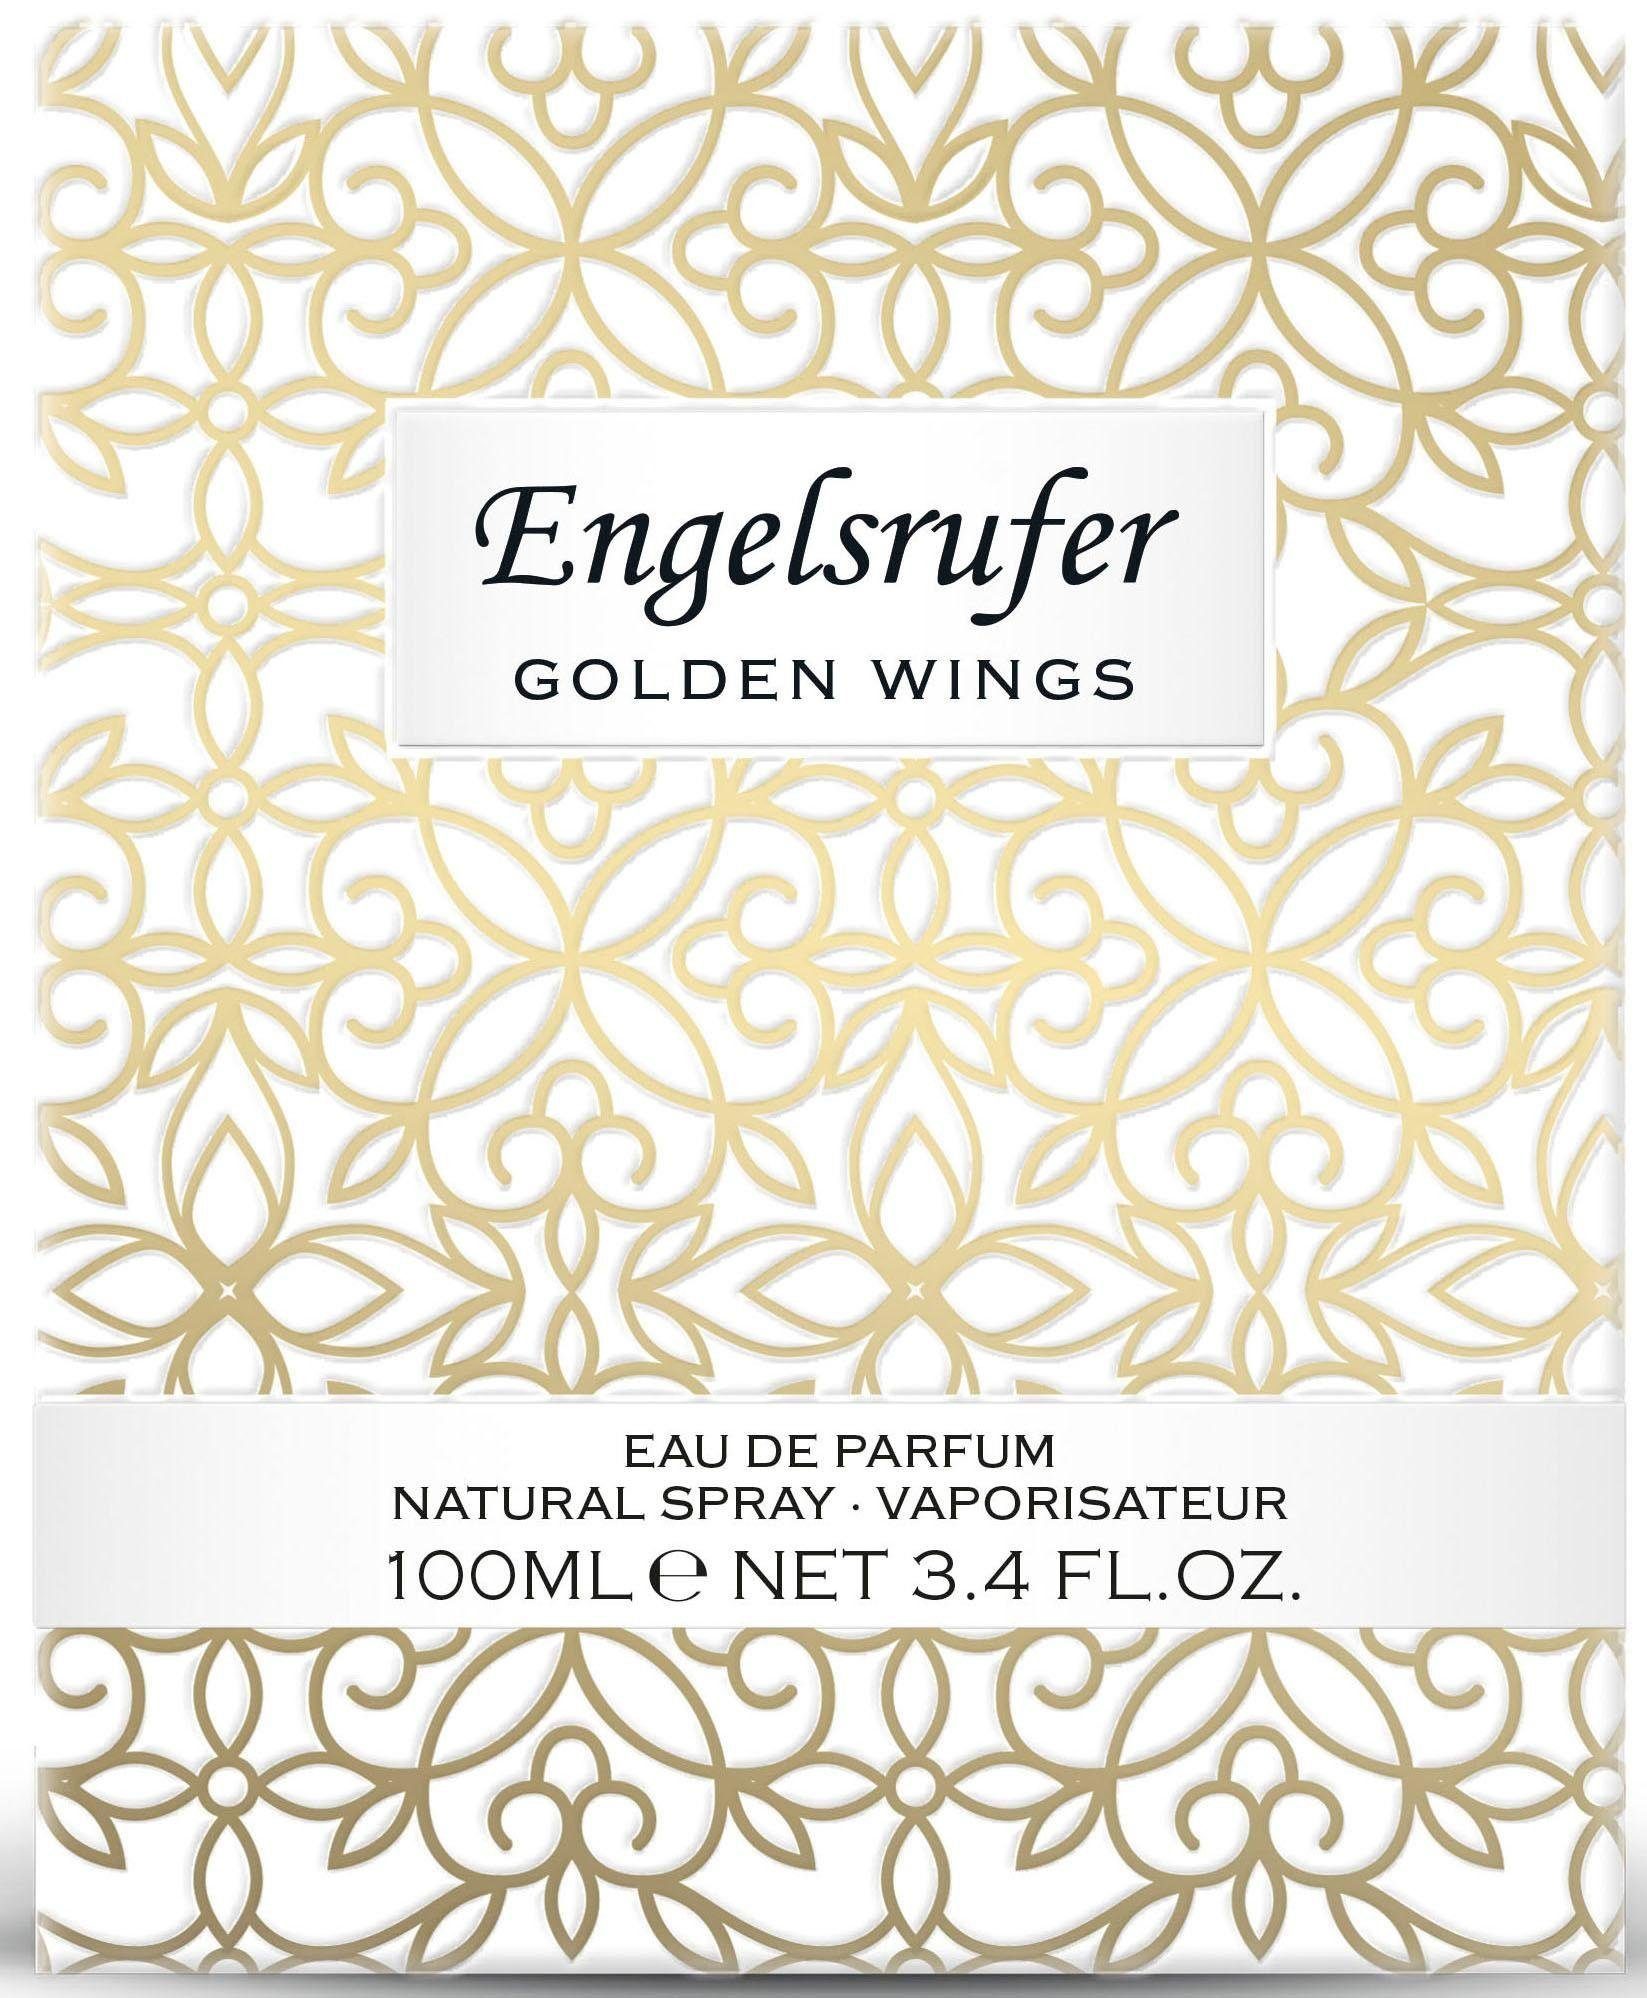 Wings Eau Golden de Parfum Engelsrufer